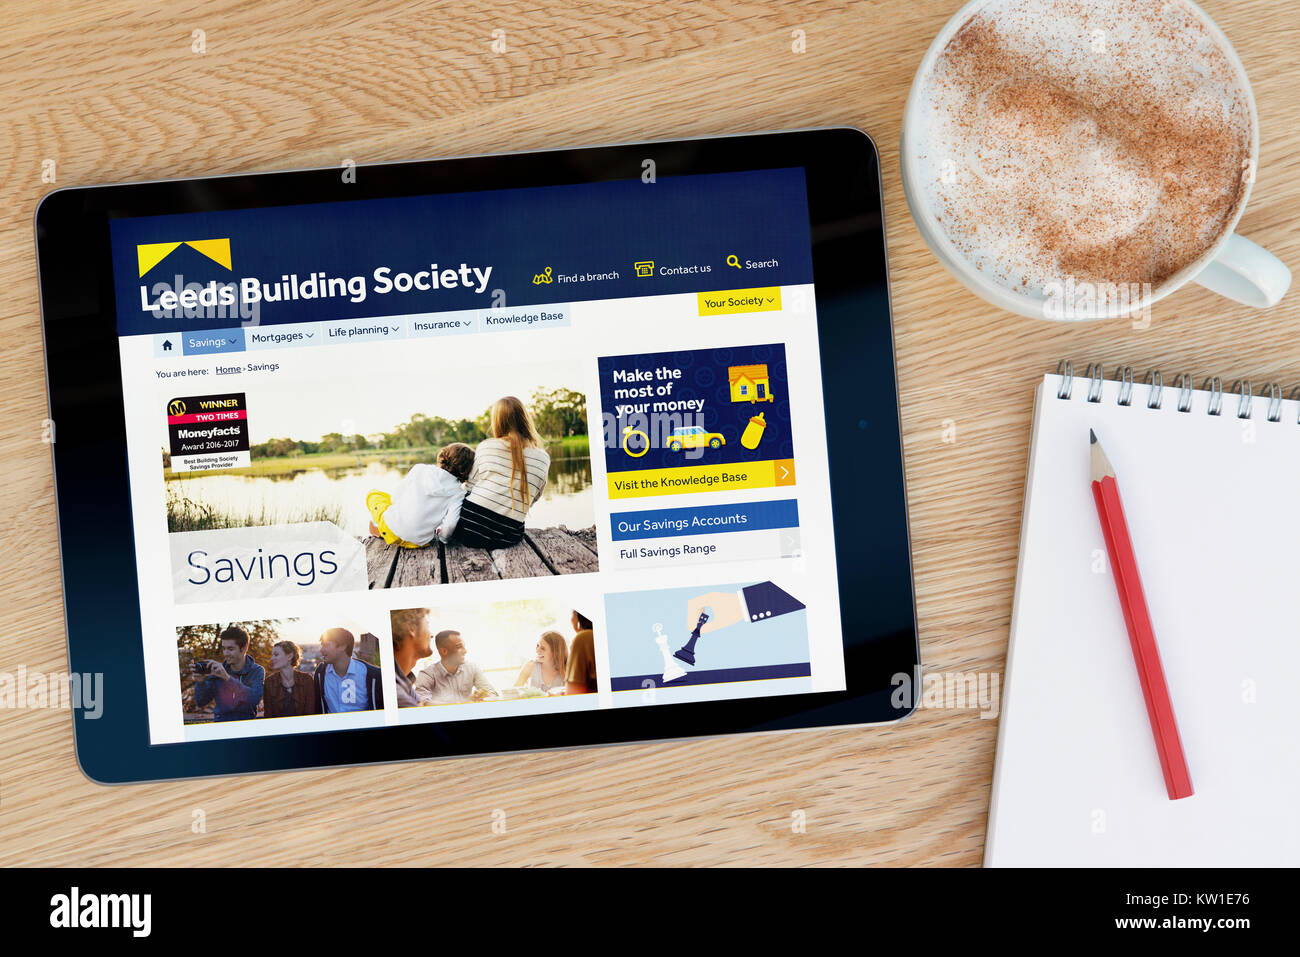 La Leeds Building Society sito web su un iPad dispositivo tablet, appoggiato su un tavolo di legno accanto a un blocco note, matita e tazza di caffè (editoriale solo) Foto Stock